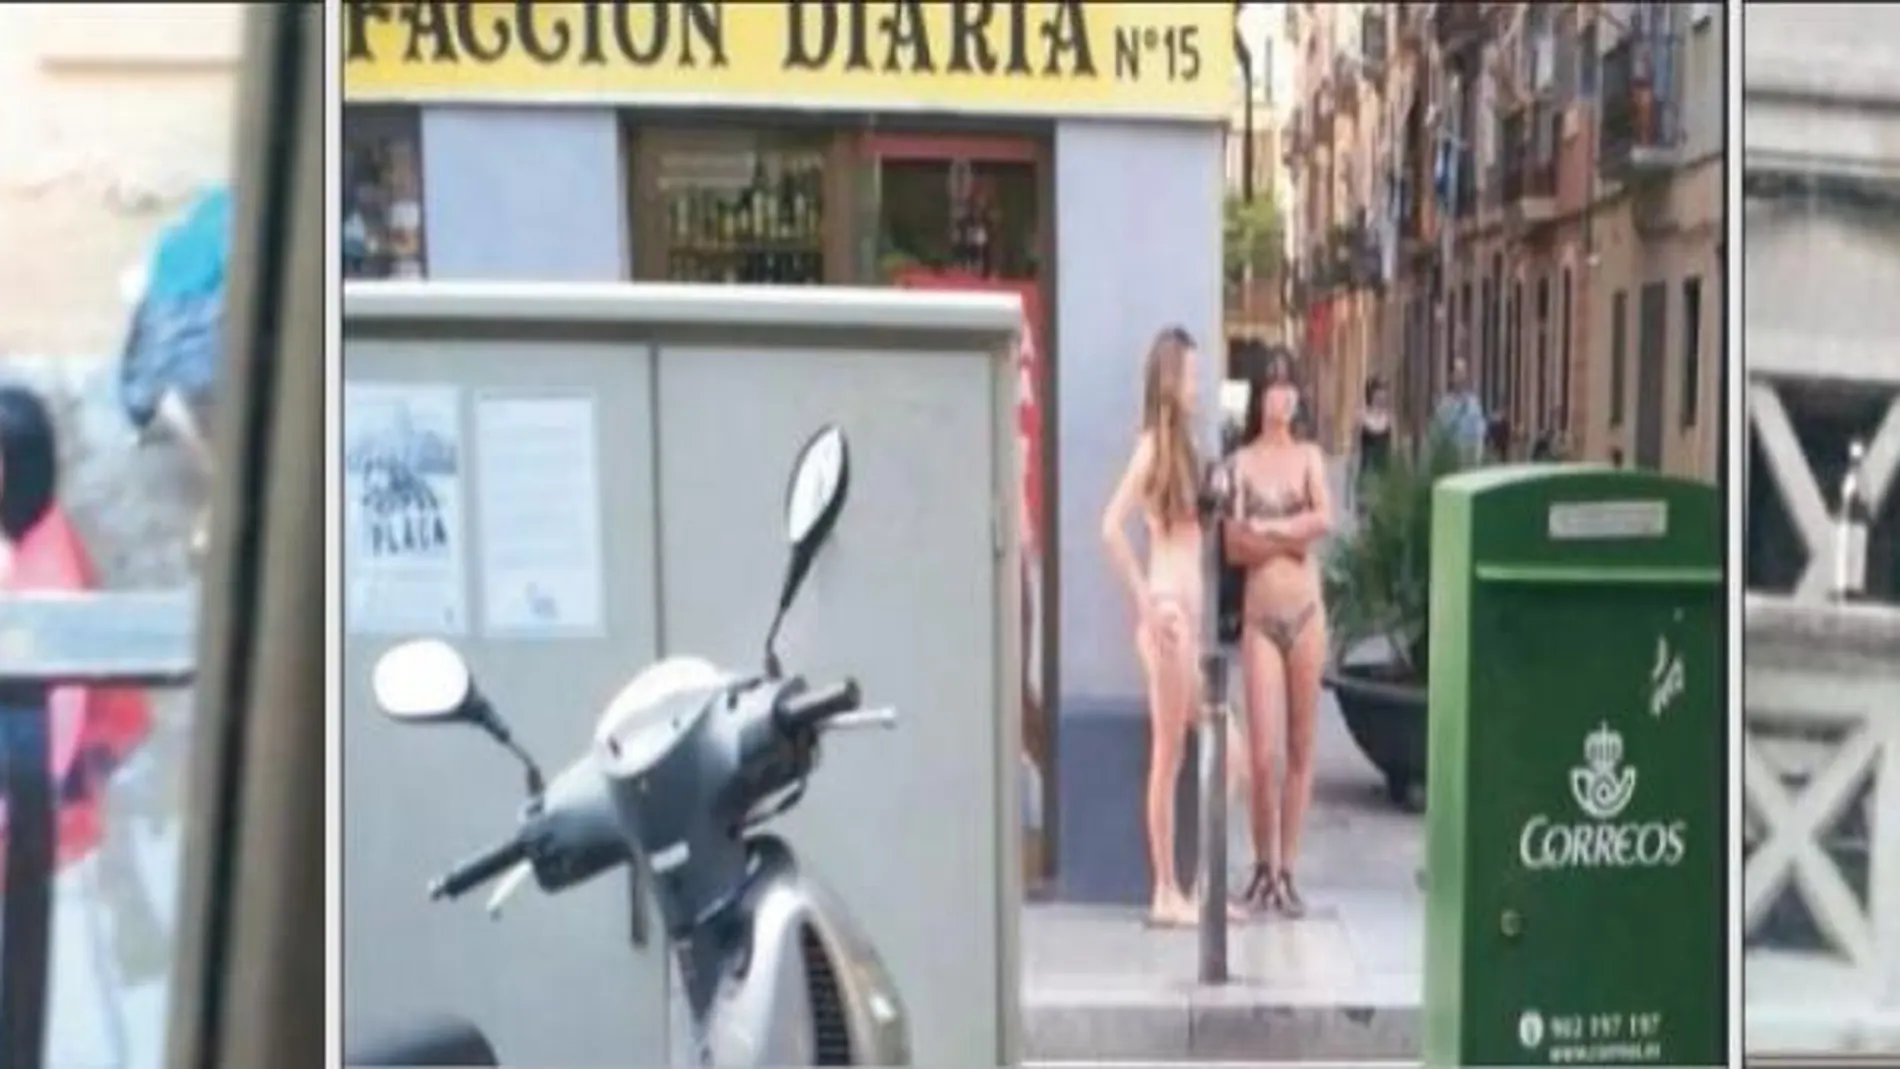 Estas imágenes que los vecinos de La Barceloneta han difundido en las redes sociales dan cuenta del día a día de un barrio acostumbrado al turismo familiar. En un artículo de «The Guardian» aseguran que este «turismo moderno» no sólo busca divertirse, sino que los de alrededor vean lo bien que se lo pasan.